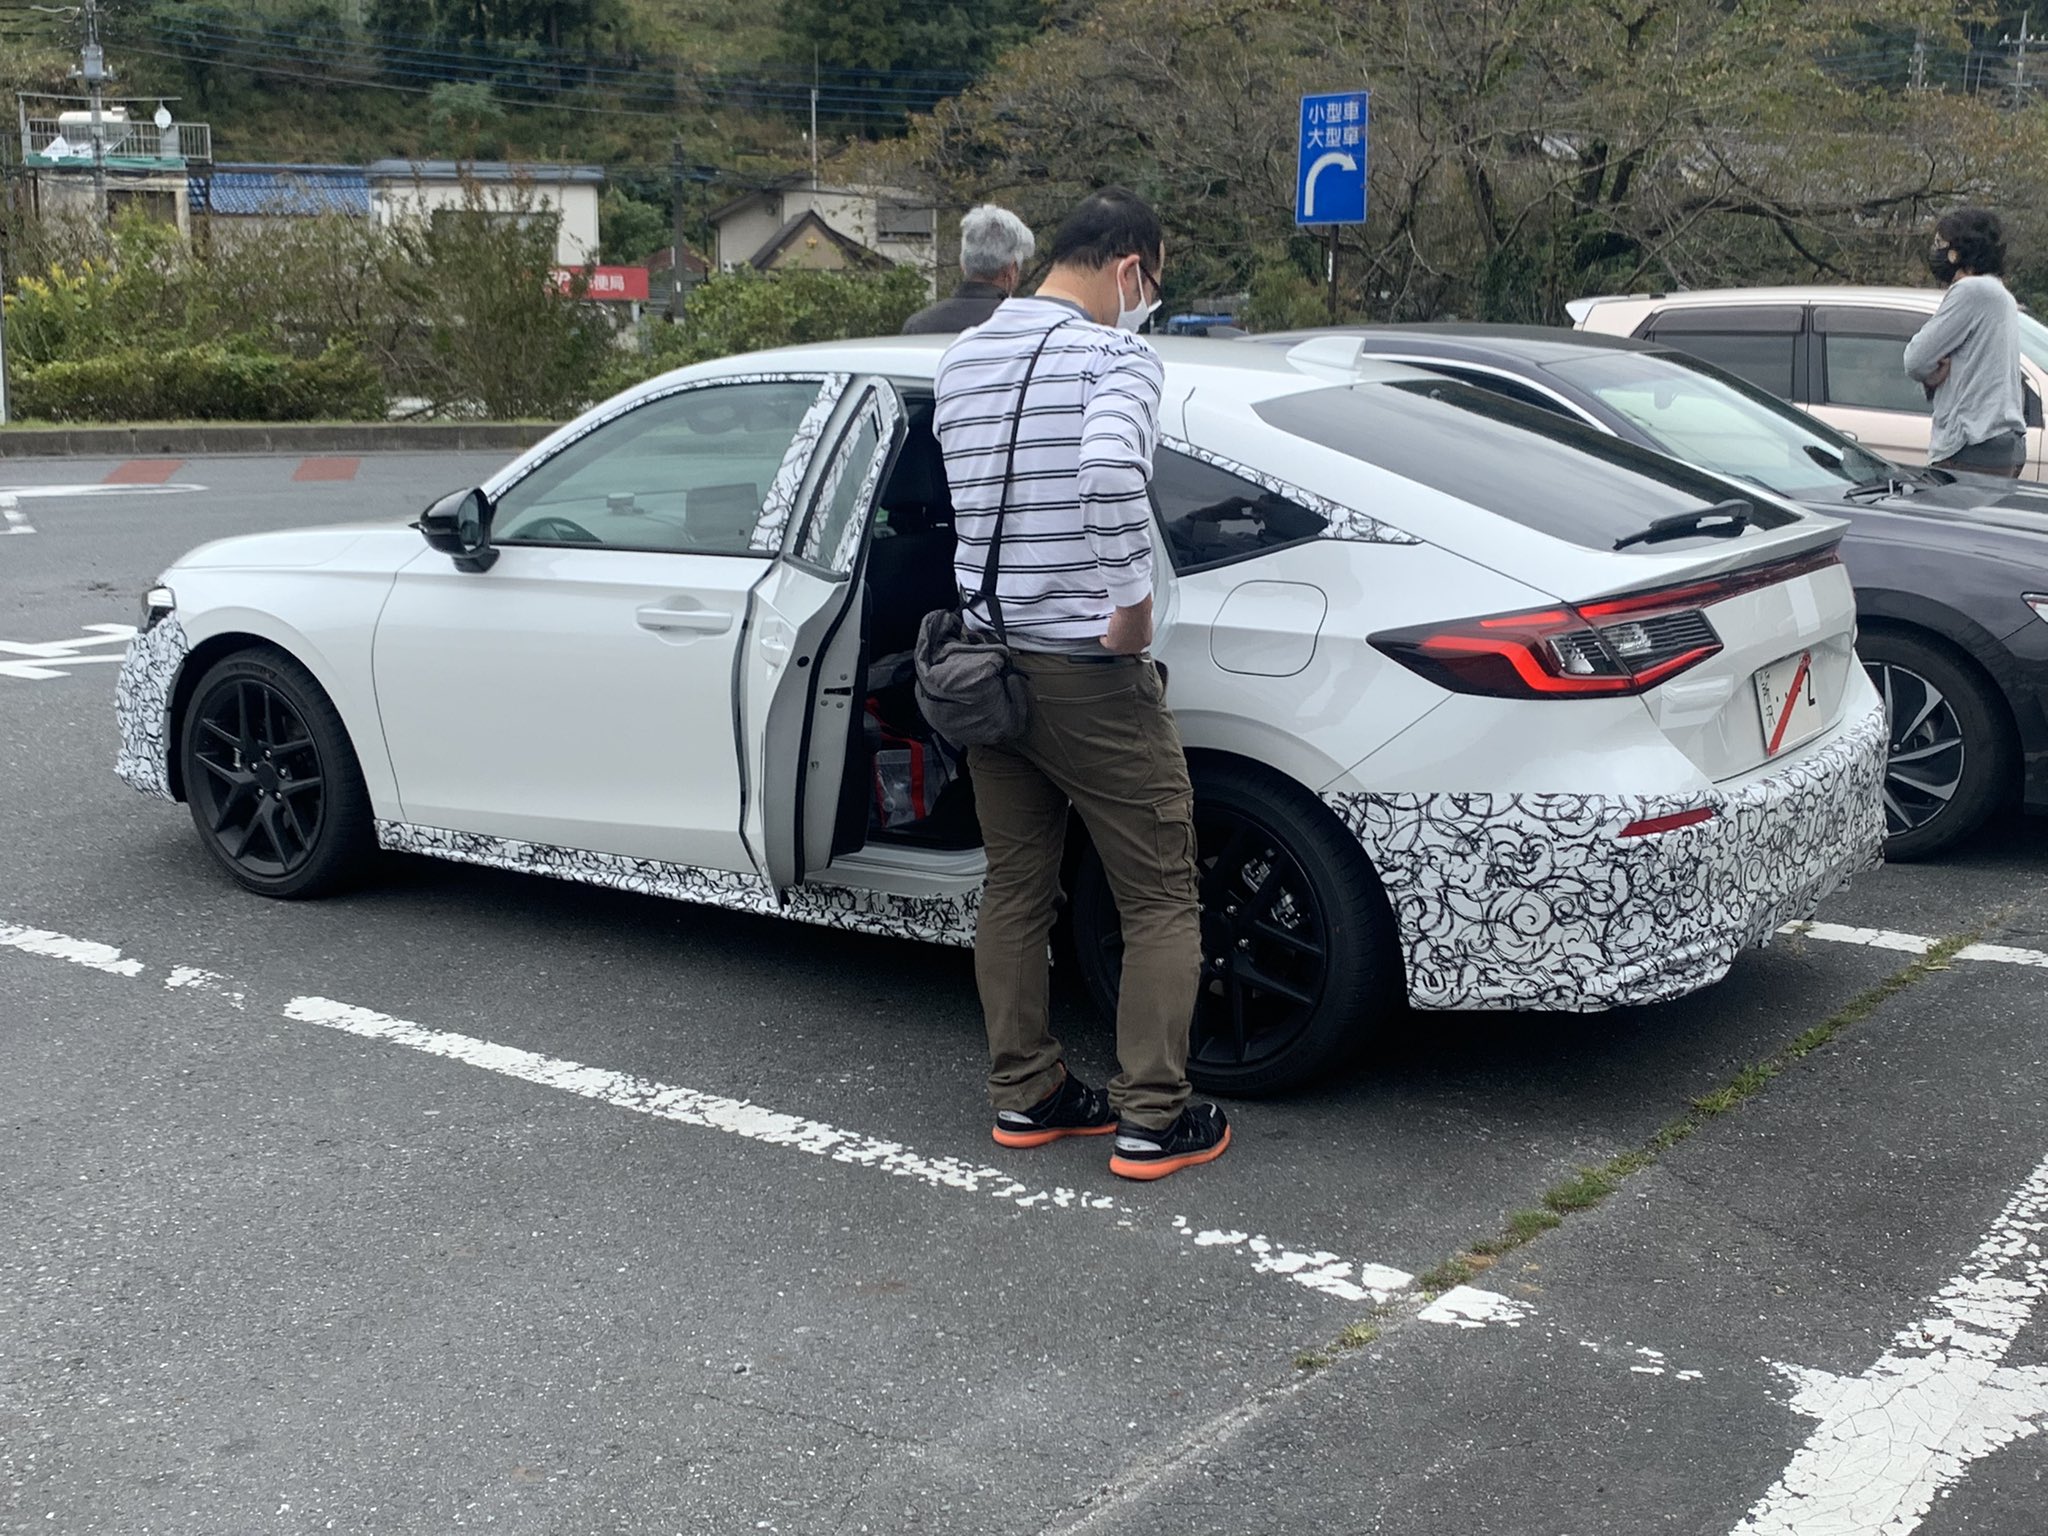 Berita, Spyshot-Honda-Civic-Hybrid-Jepang: Sebuah Honda Civic Hatchback Diuji Jalan, Varian Hybrid?